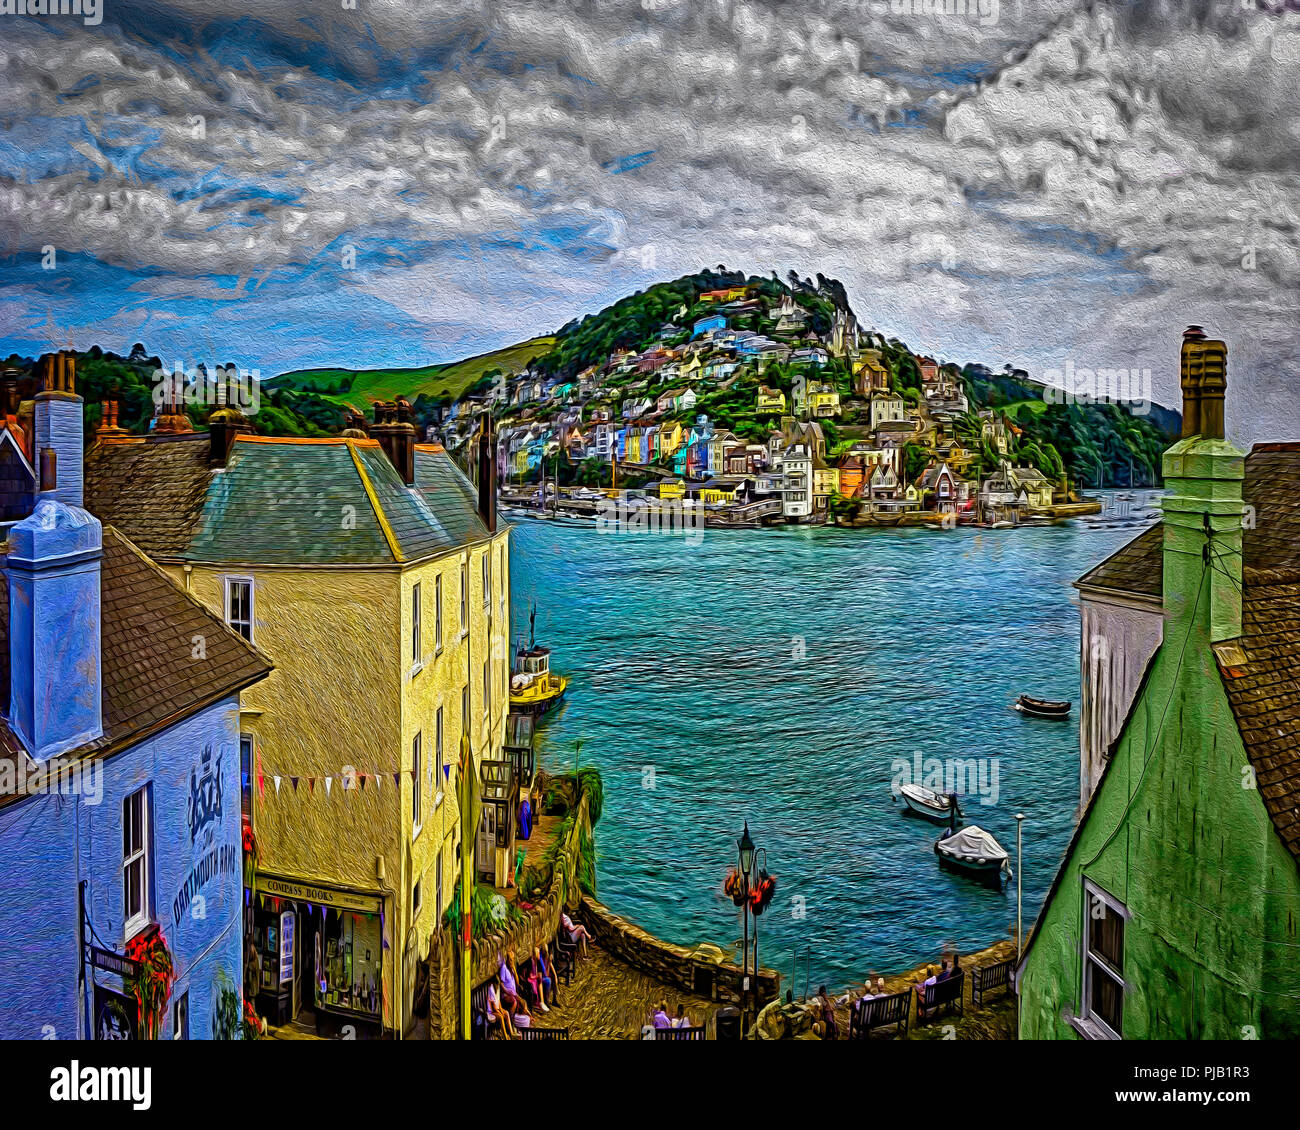 DIGITAL ART: Kingswear across the river Dart seen from Dartmouth, Devon, Great Britain Stock Photo